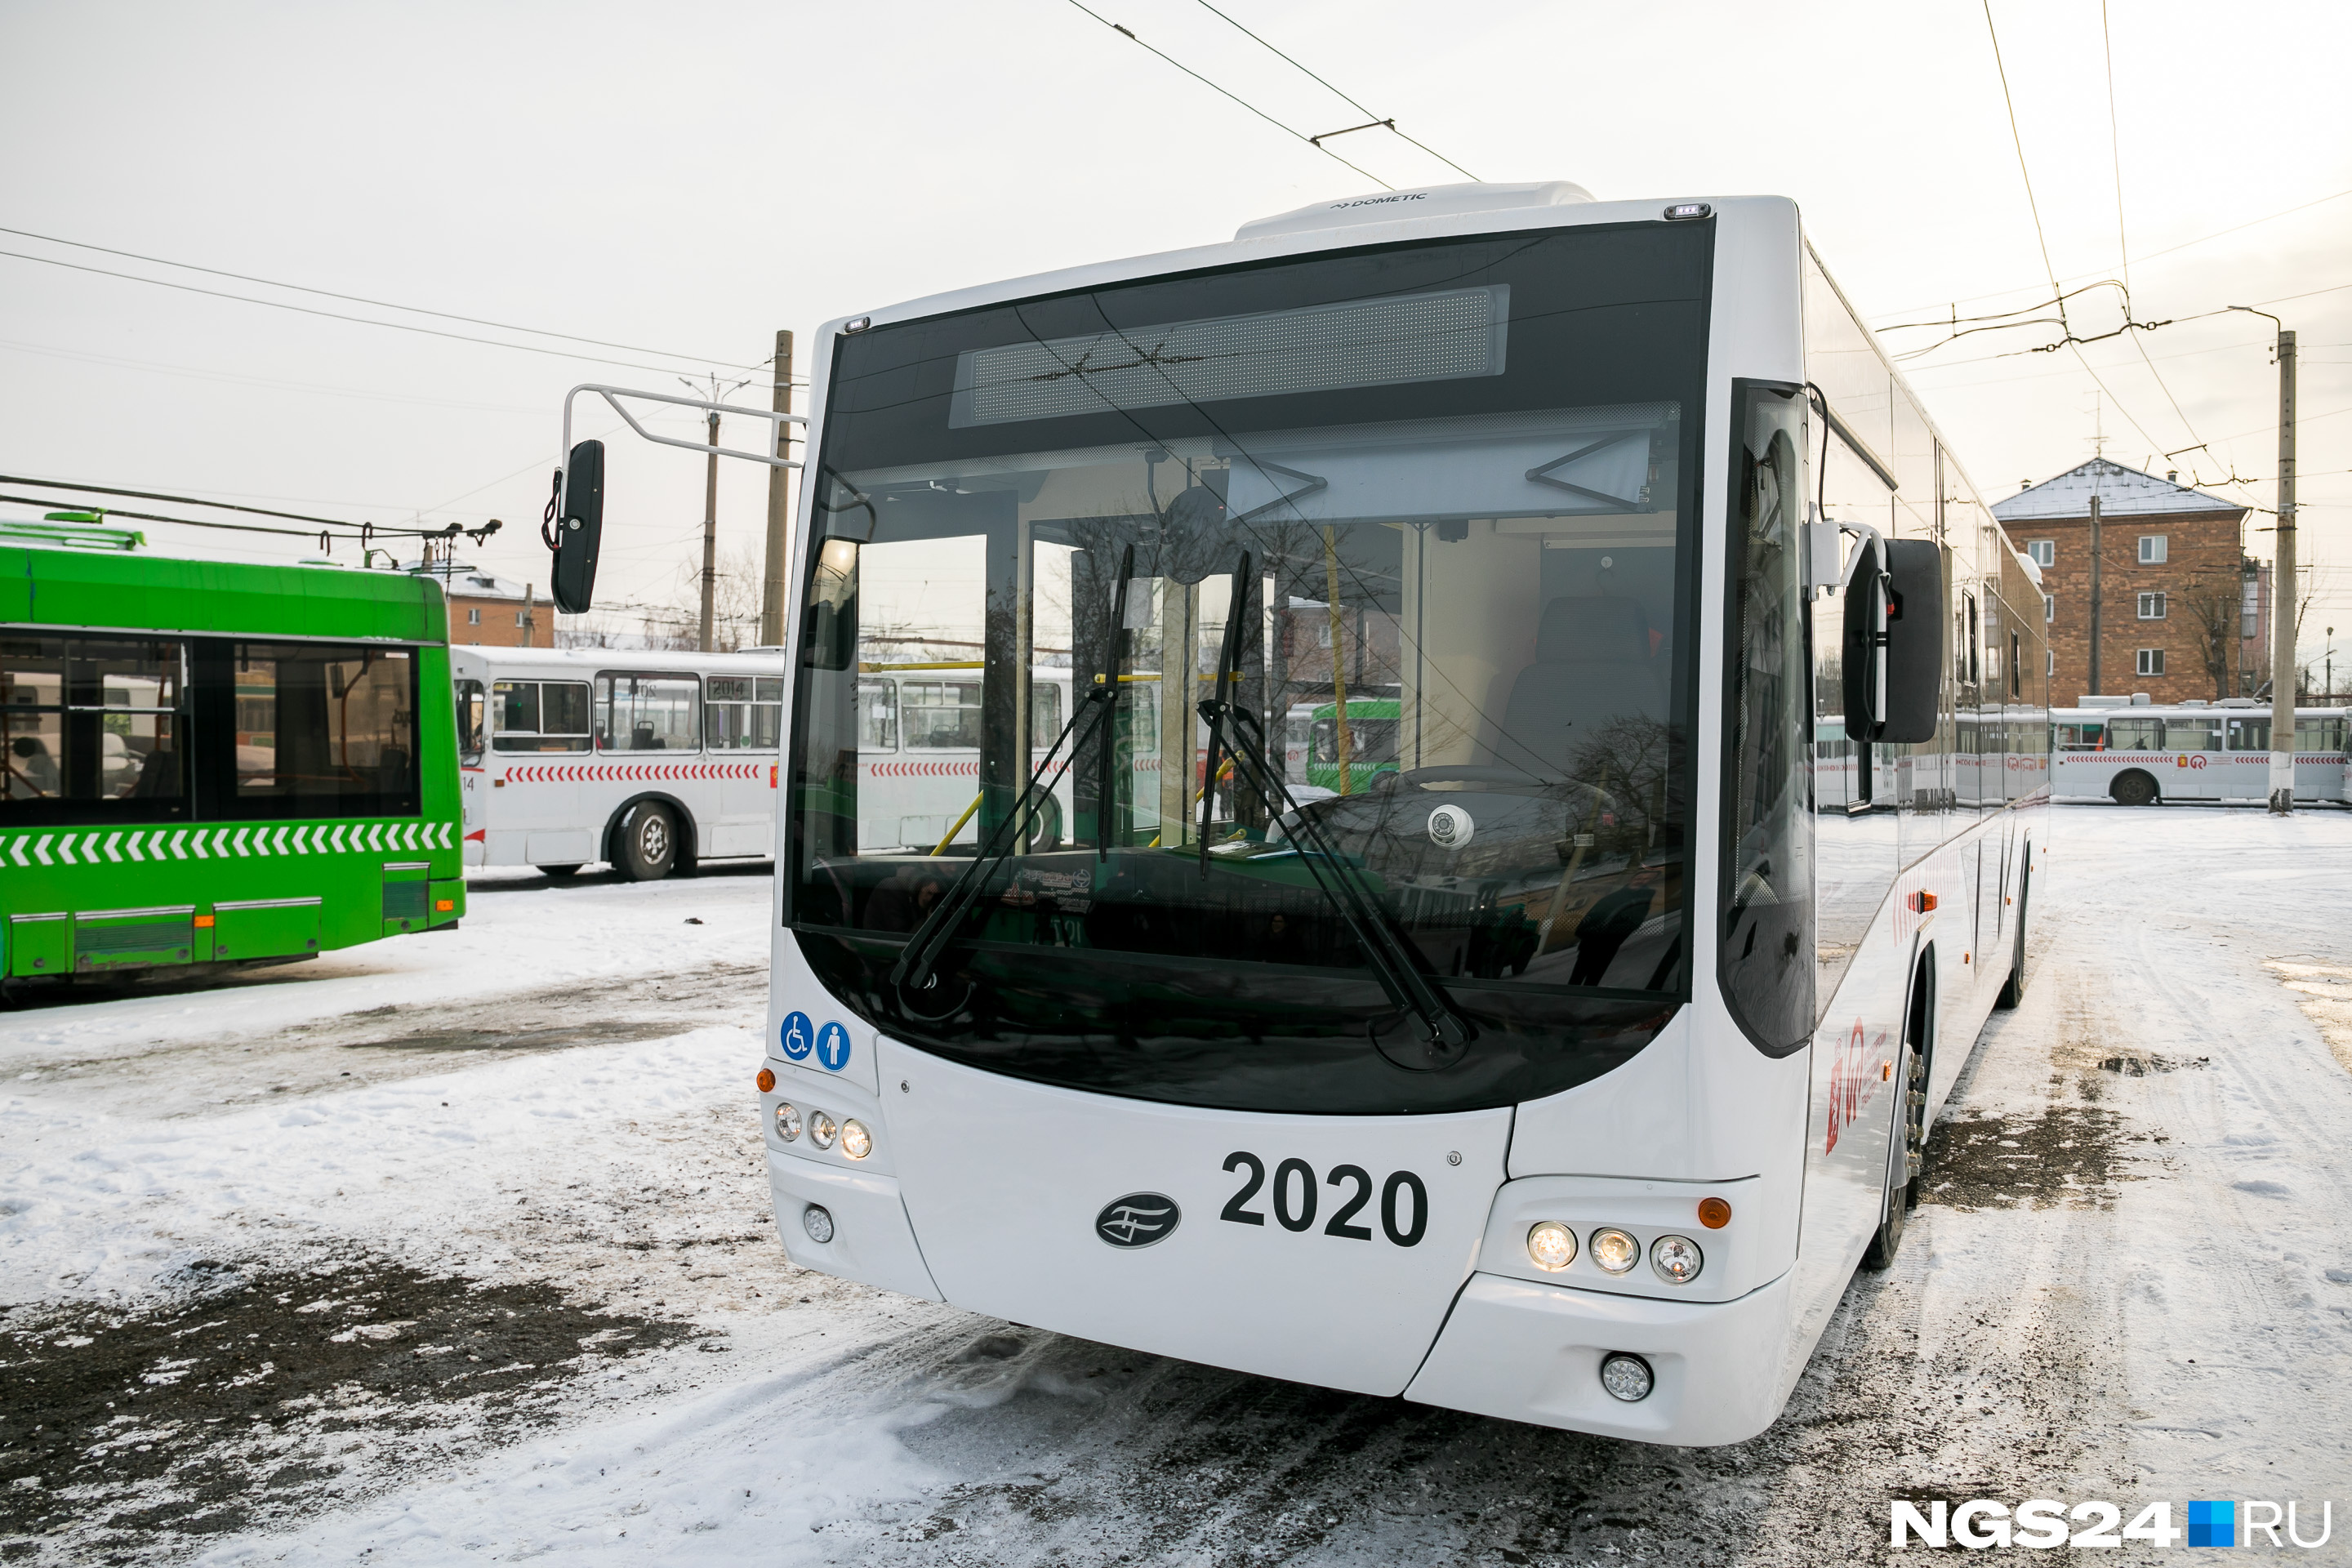 В Красноярске на линию вышел новый троллейбус - 5 февраля 2020 - НГС24